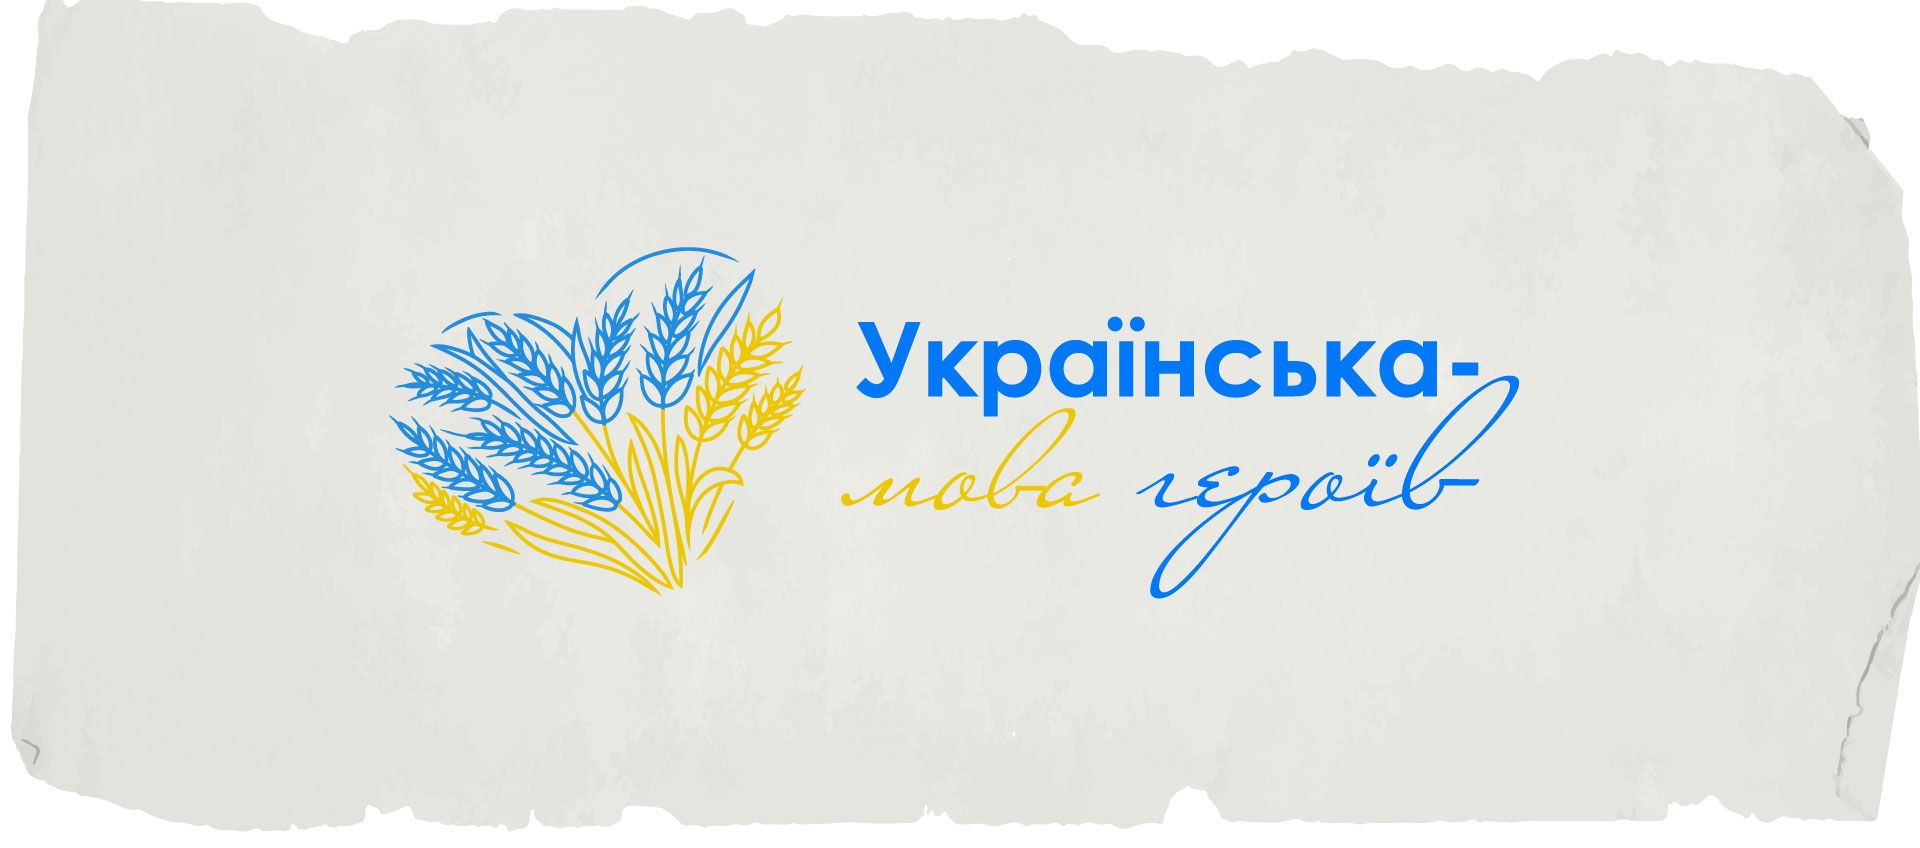 Украинский язык - как украинцы могут отвоевать русифицированное пространство - 24 Канал - Образование